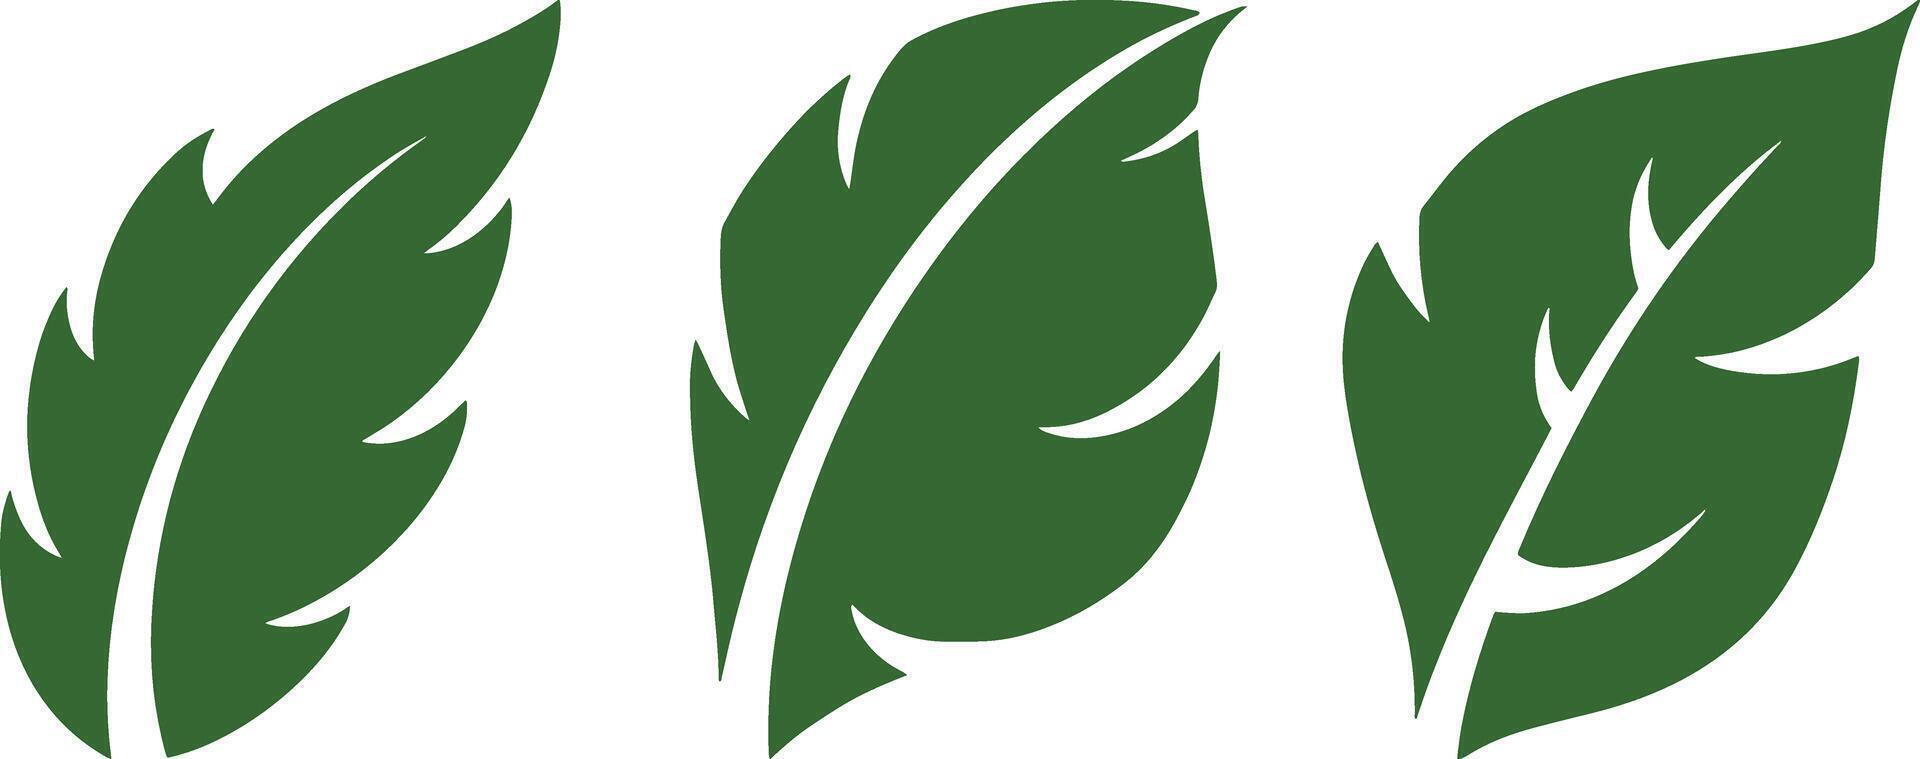 Stencil leaf icon Eco clipart Laurel vector